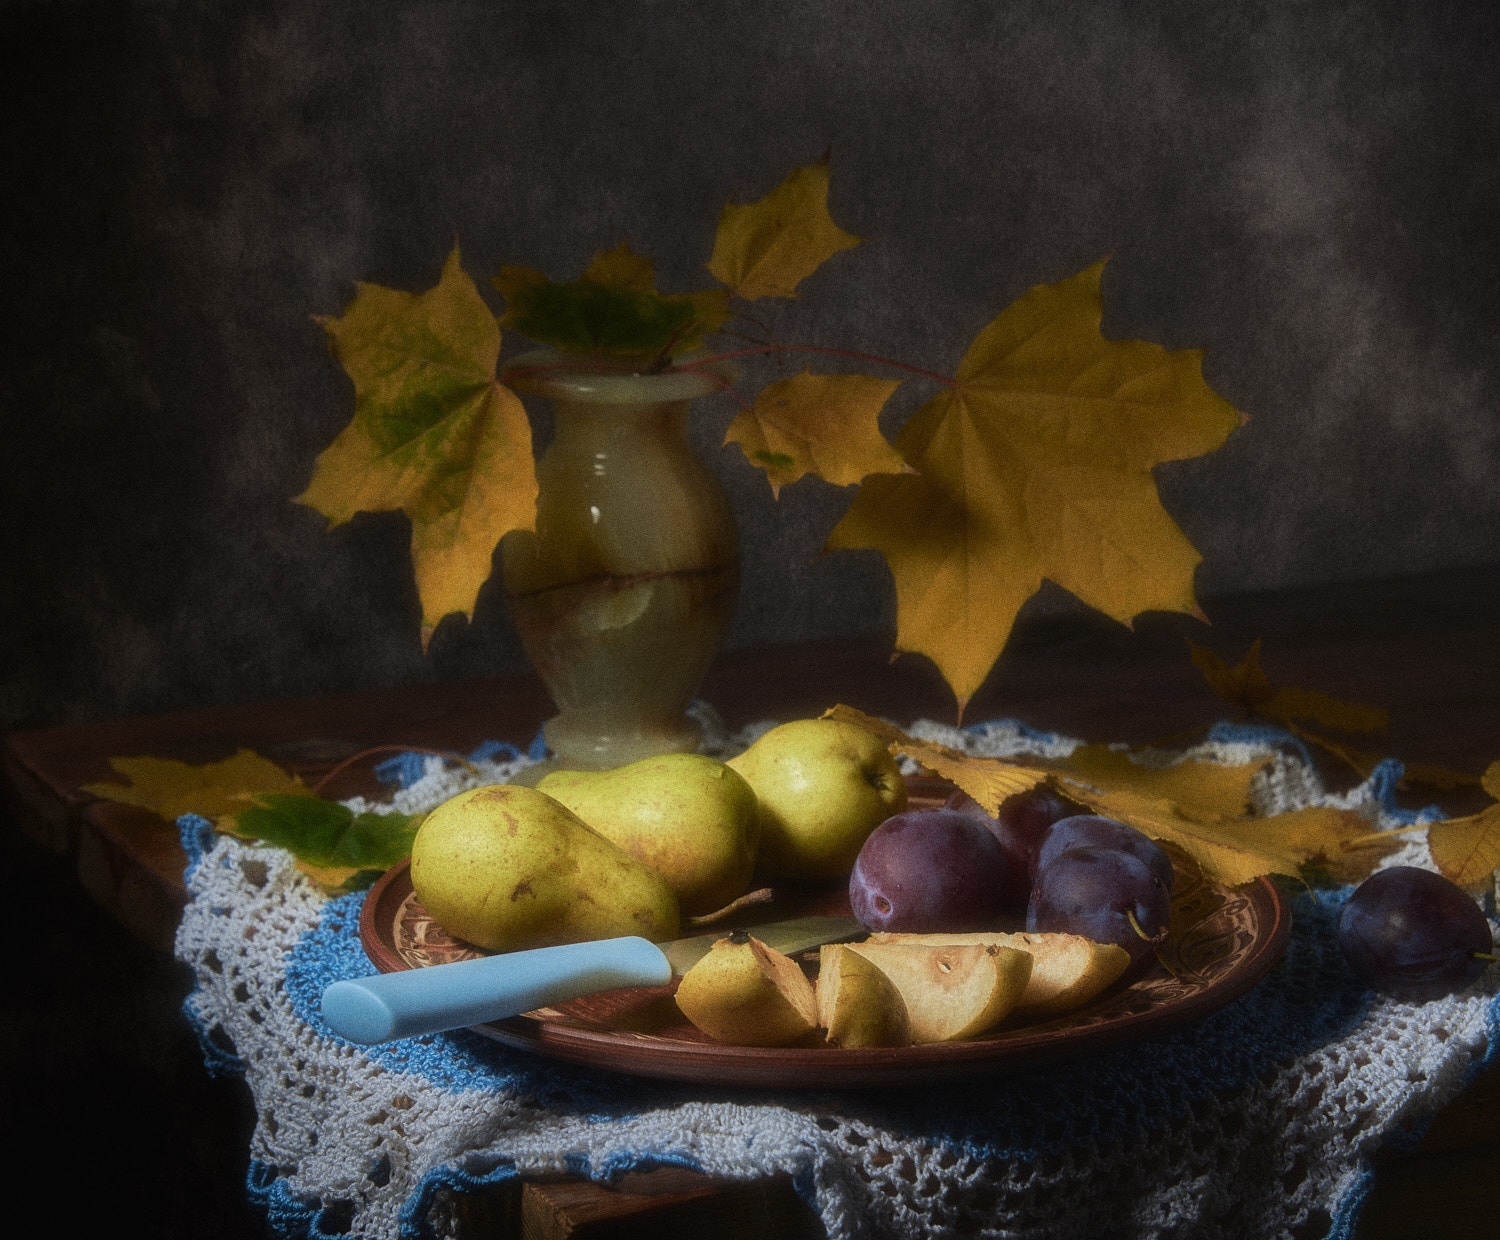 Осенние плоды натюрморт композиция постановка сцена плоды еда фрукты груши сливы листва